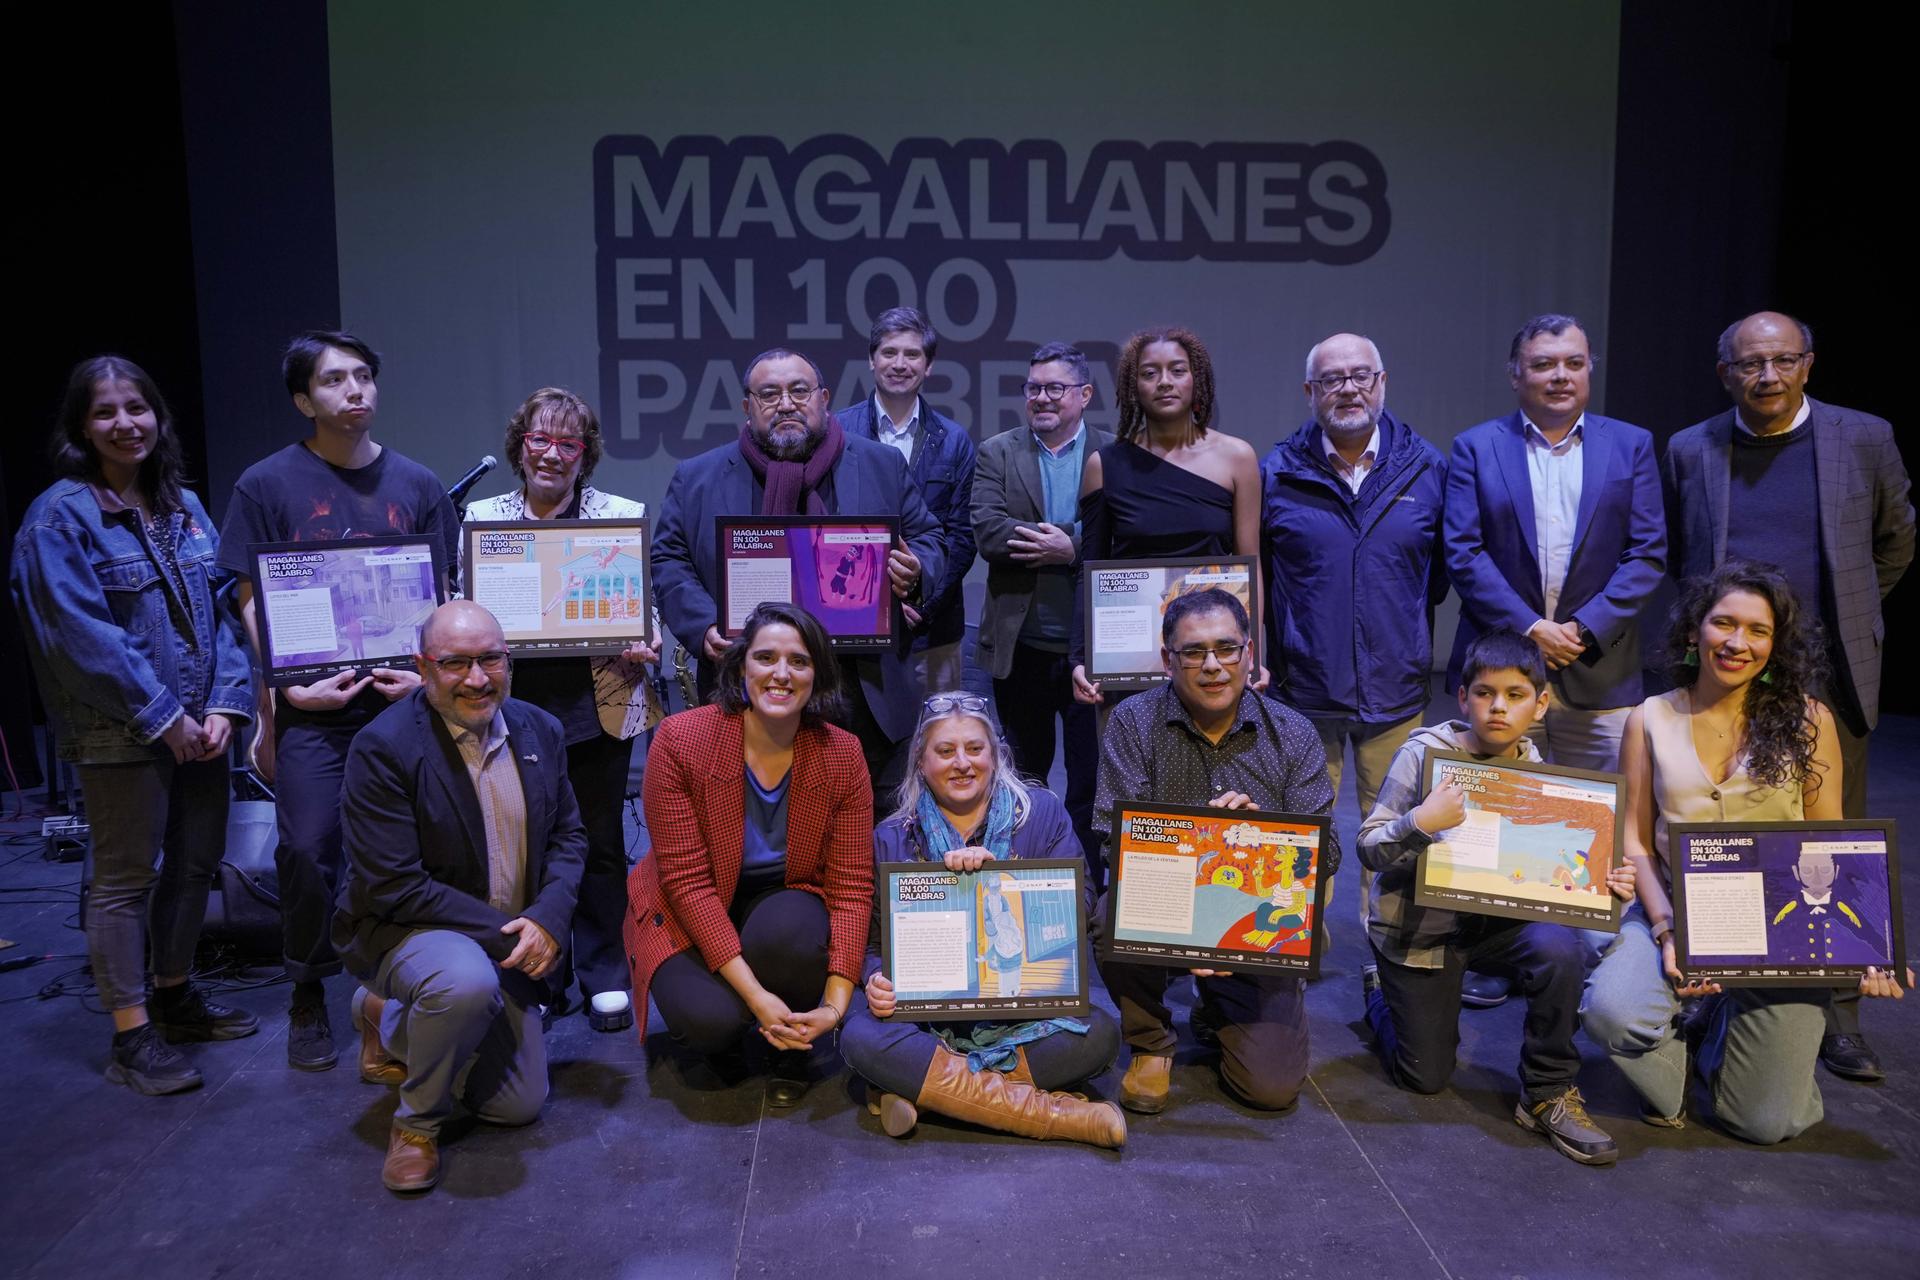  Con emocionante premiación culminó versión 2023 de Magallanes en 100 Palabras